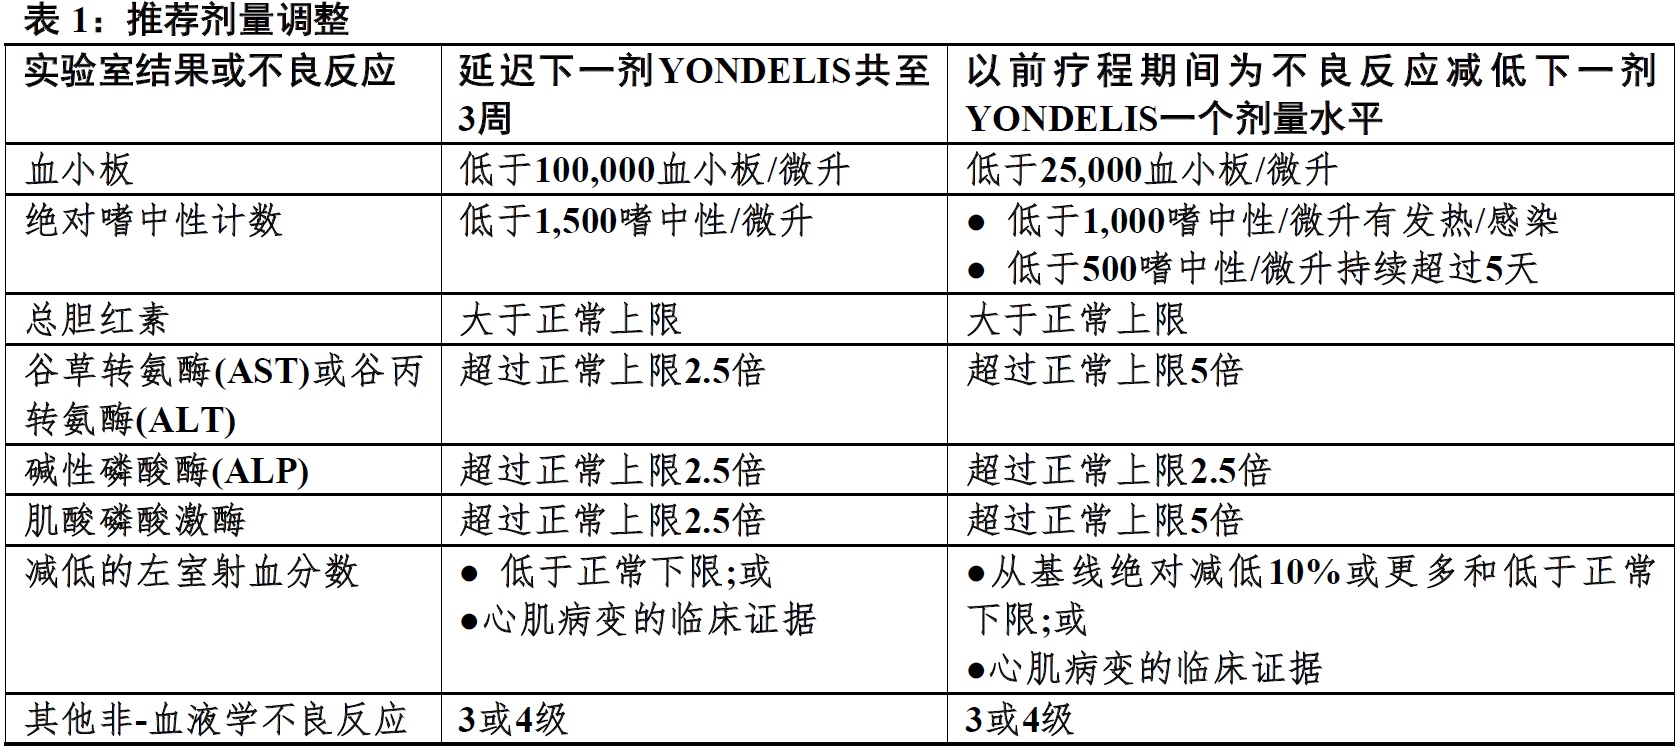 Yondelis(曲贝替定[trabectedin])使用说明书2015年第一版